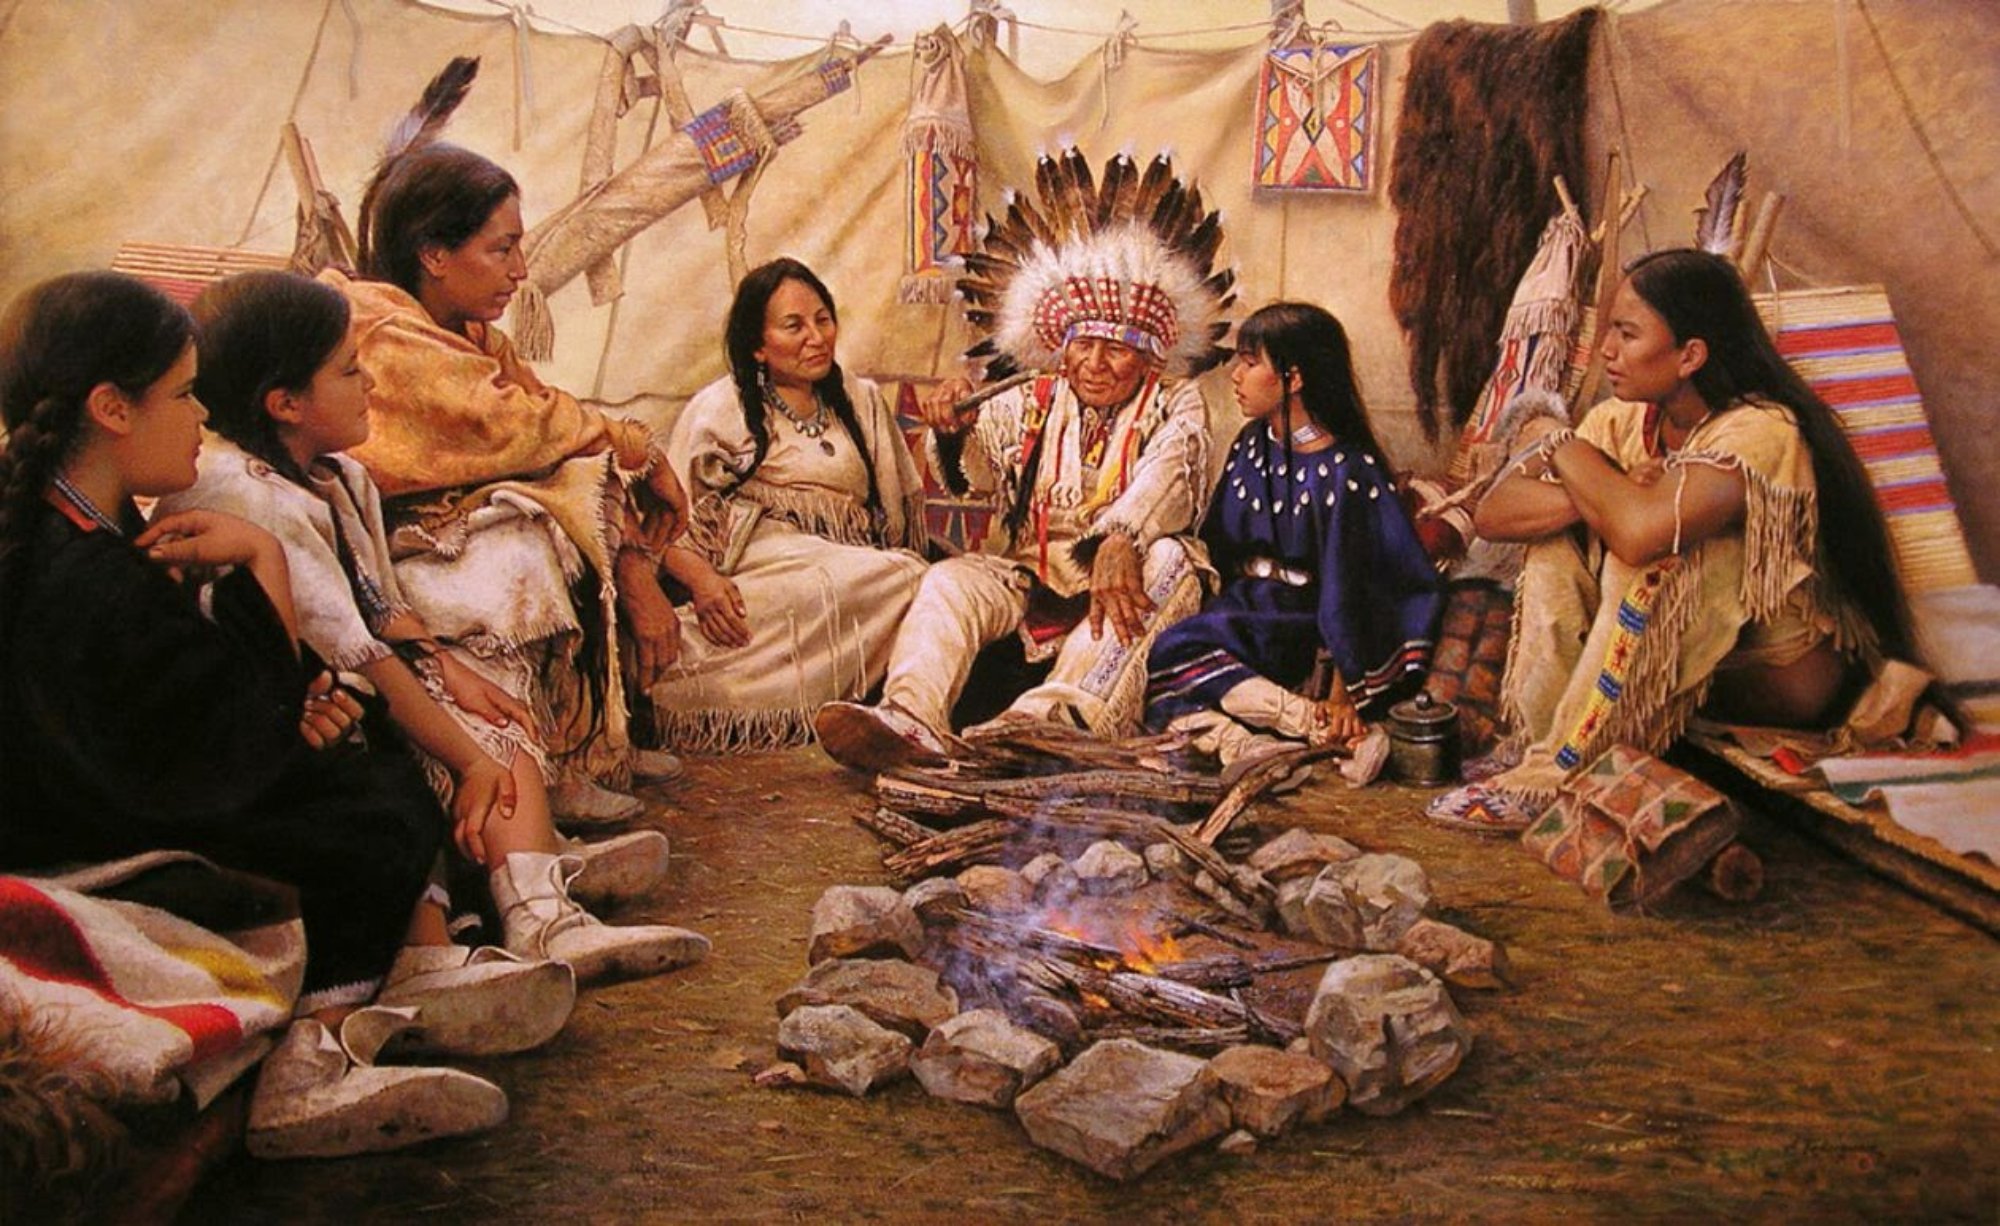 Indian tribes. Альфредо Родригез индейцы. Индейцы племени Навахо. Древние индейцы Северной Америки. Американские индейцы вожди индейцев Северной Америки.